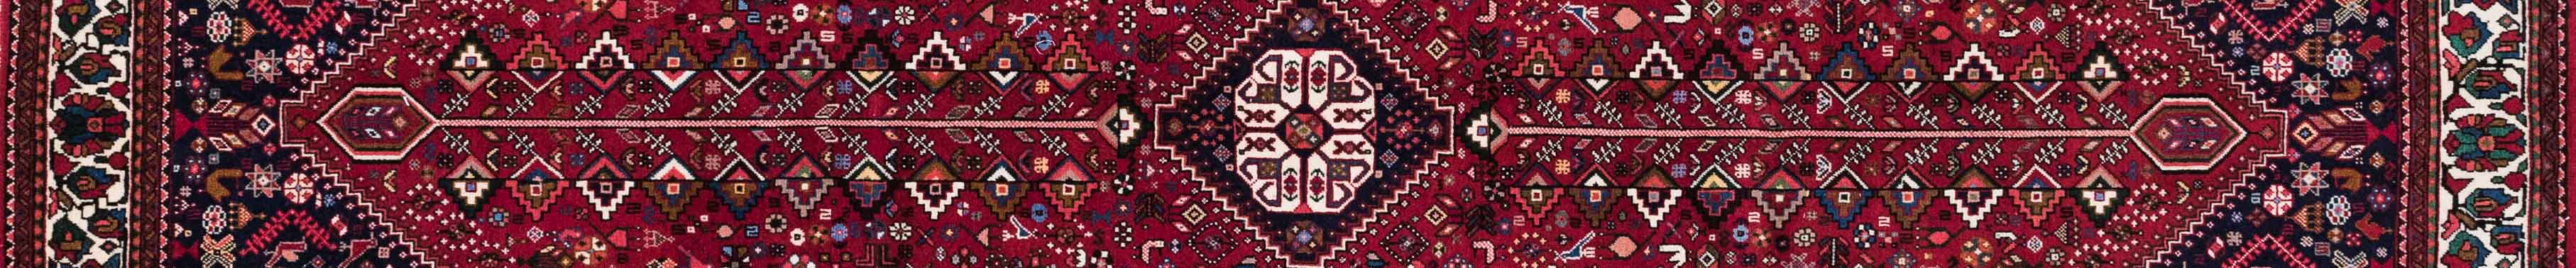 Abadeh Persian Carpet Rug N1Carpet Canada Montreal Tapis Persan 5900